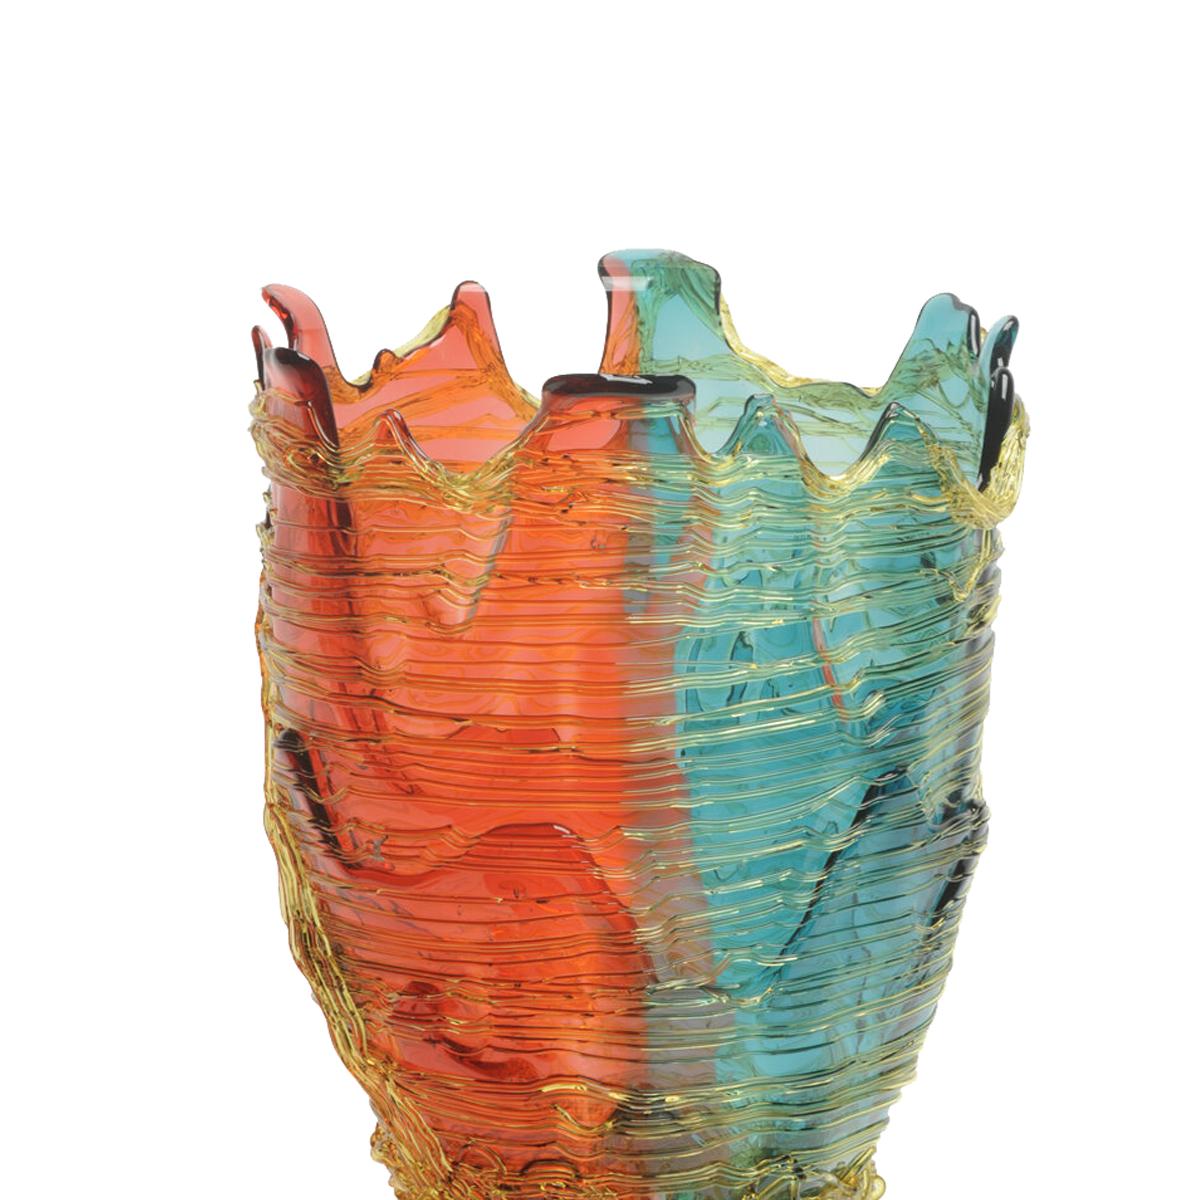 Vase de couleur spaghetti, fuchsia clair, aqua et ambre

Vase en résine souple conçu par Gaetano Pesce en 1995 pour la collection Fish Design.

Mesures : L Ø 22cm x H 36cm

Couleur : fuchsia clair, aqua et ambre
Vase en résine souple conçu